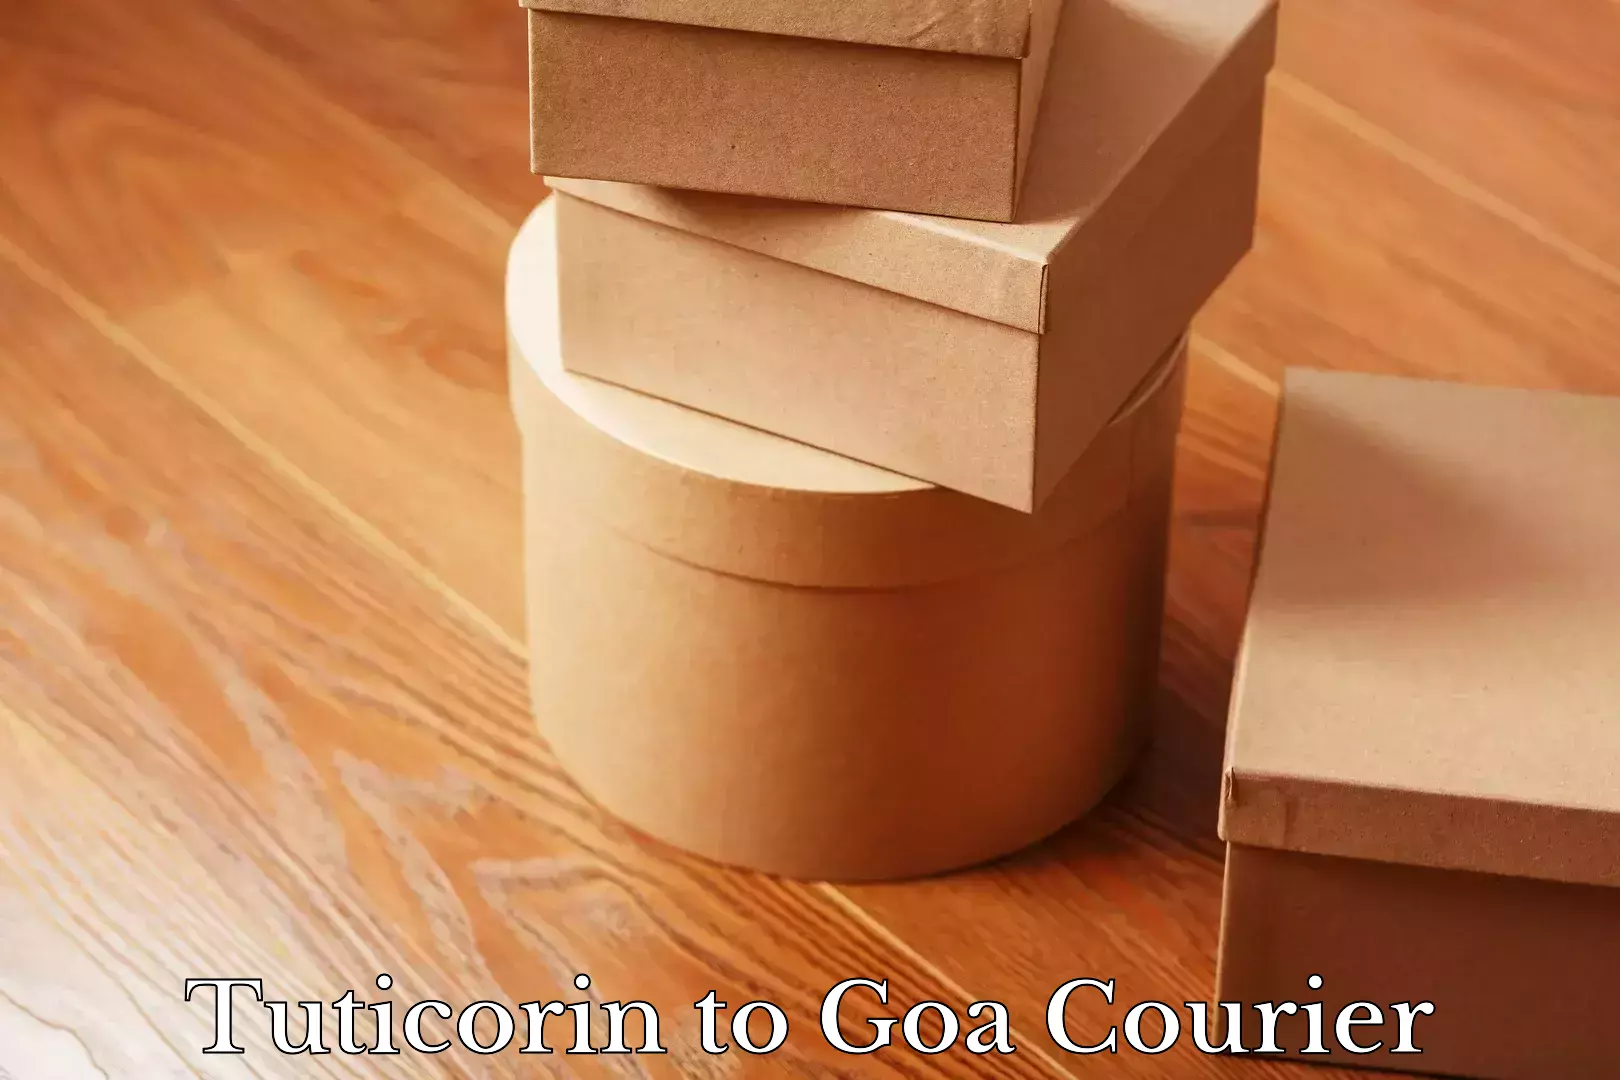 Trackable shipping service Tuticorin to Goa